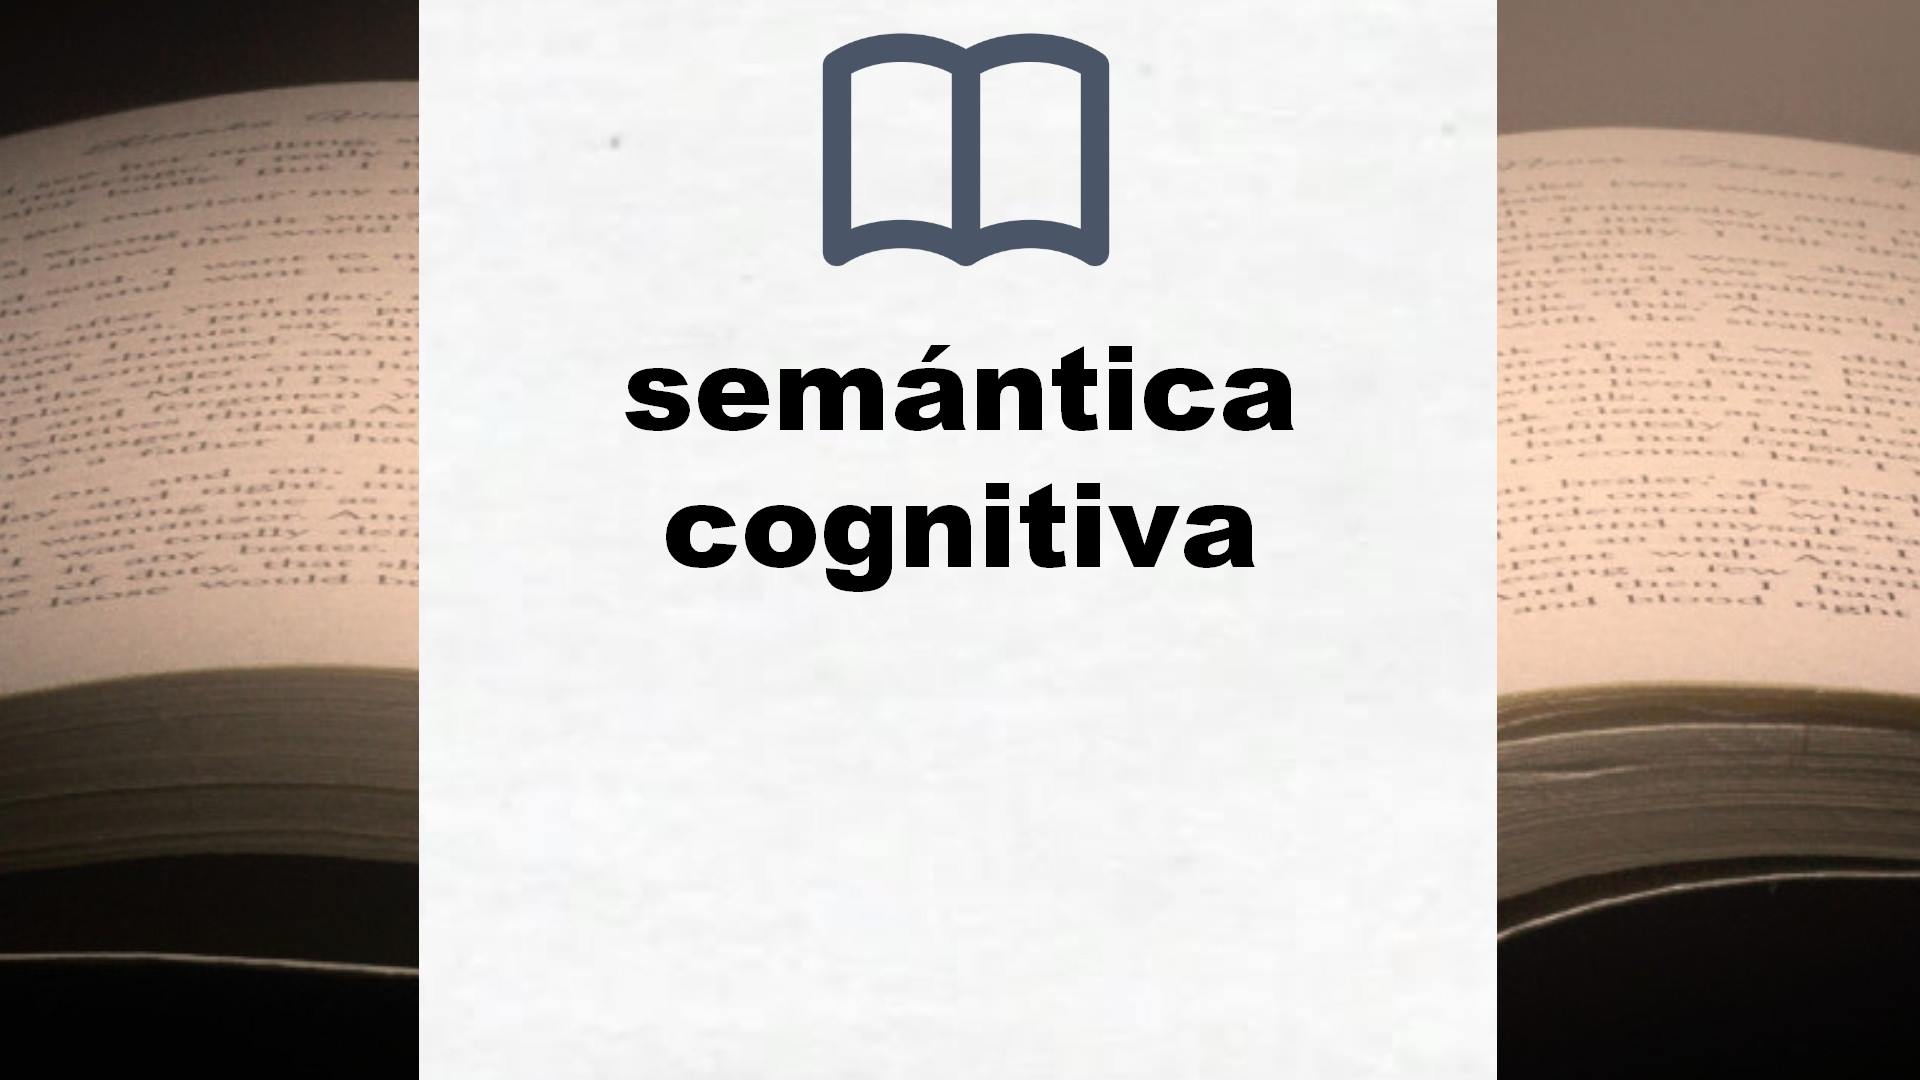 Libros sobre semántica cognitiva